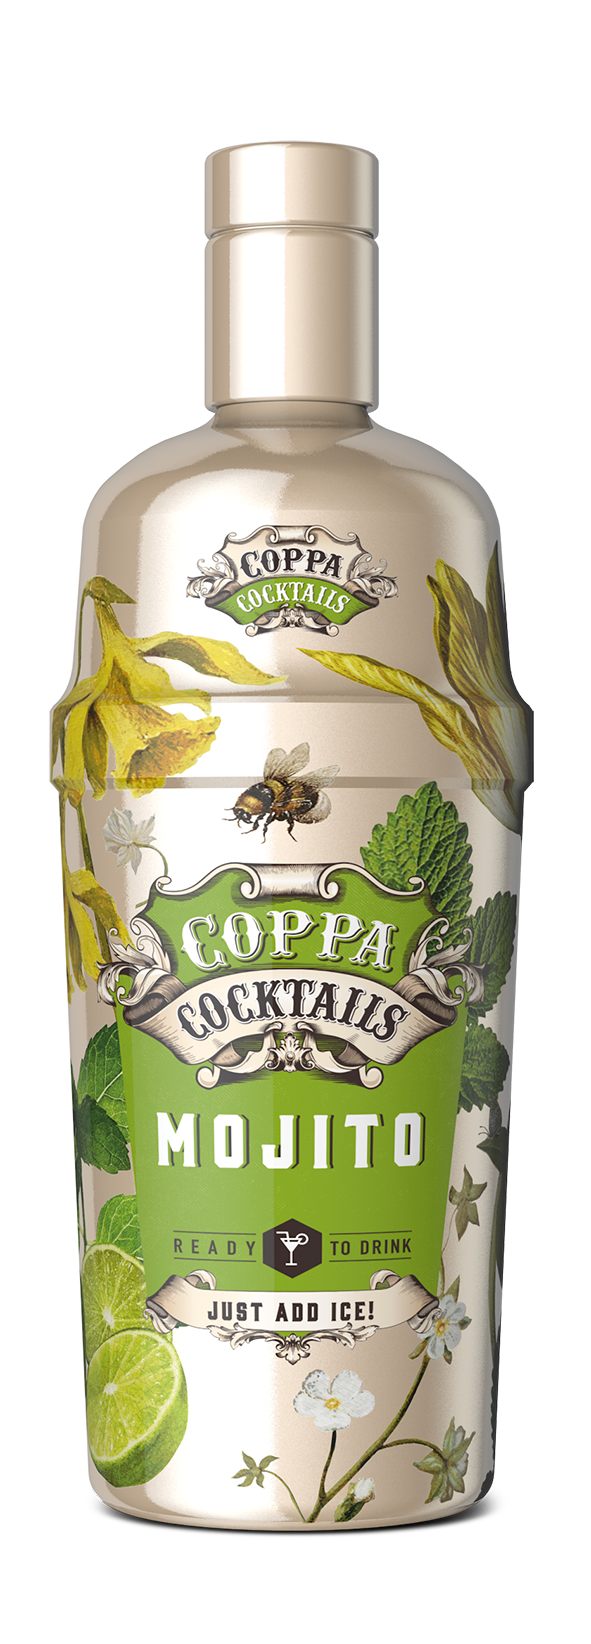 Coppa Cocktails Mojito 10% Vol. 0,7 l